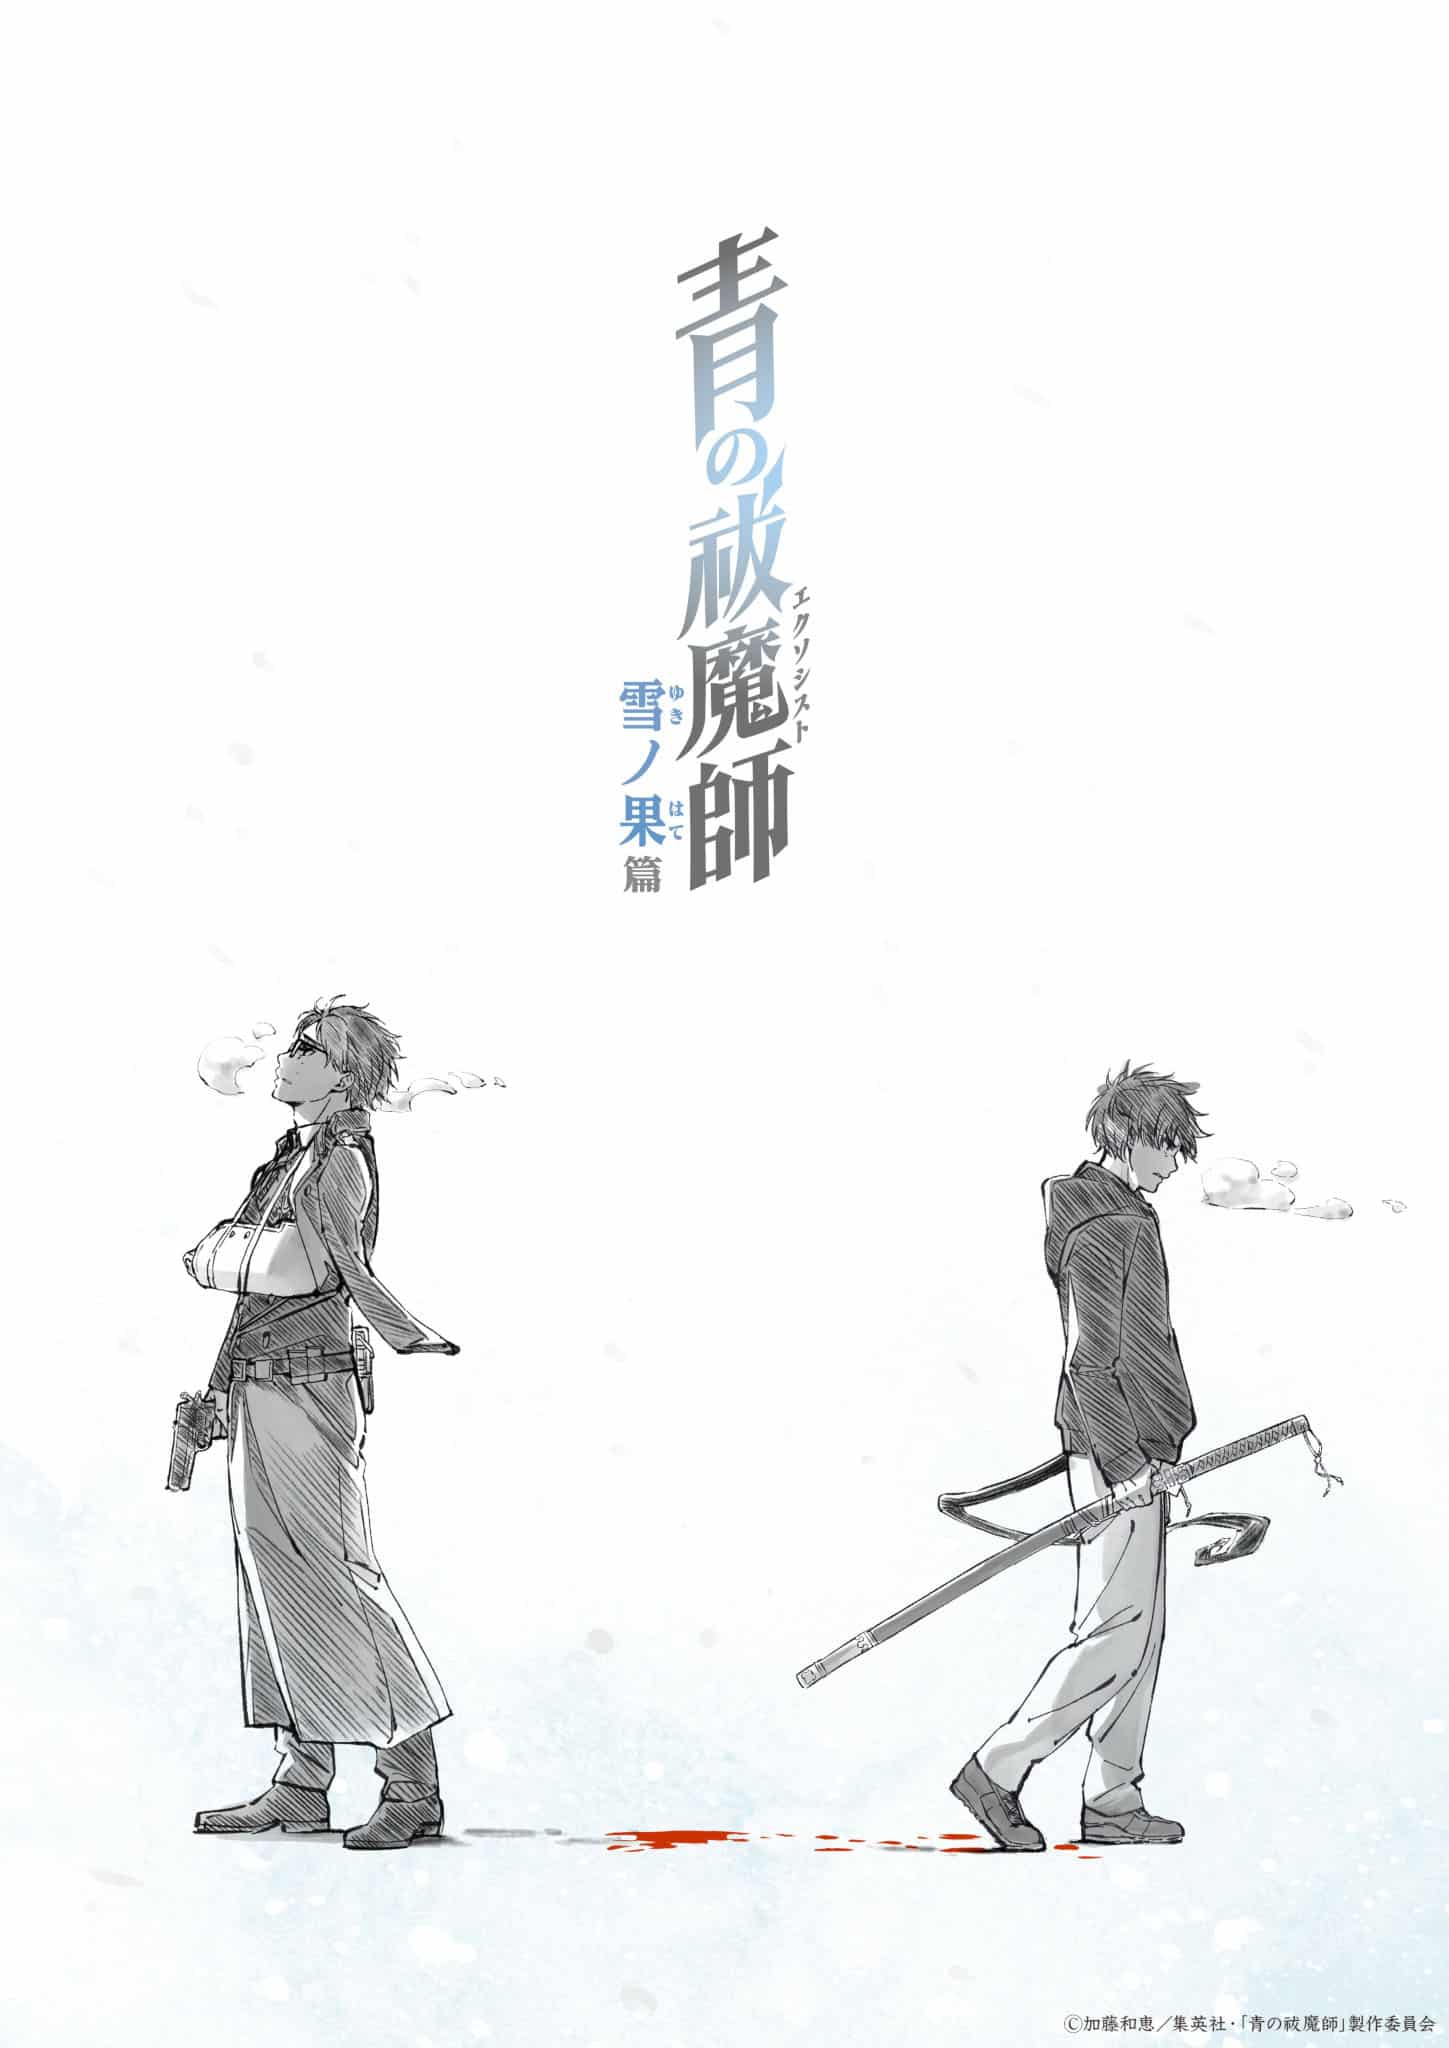 Premier visuel pour l'anime Blue Exorcist Saison 4 : Yuki no Hate-hen.